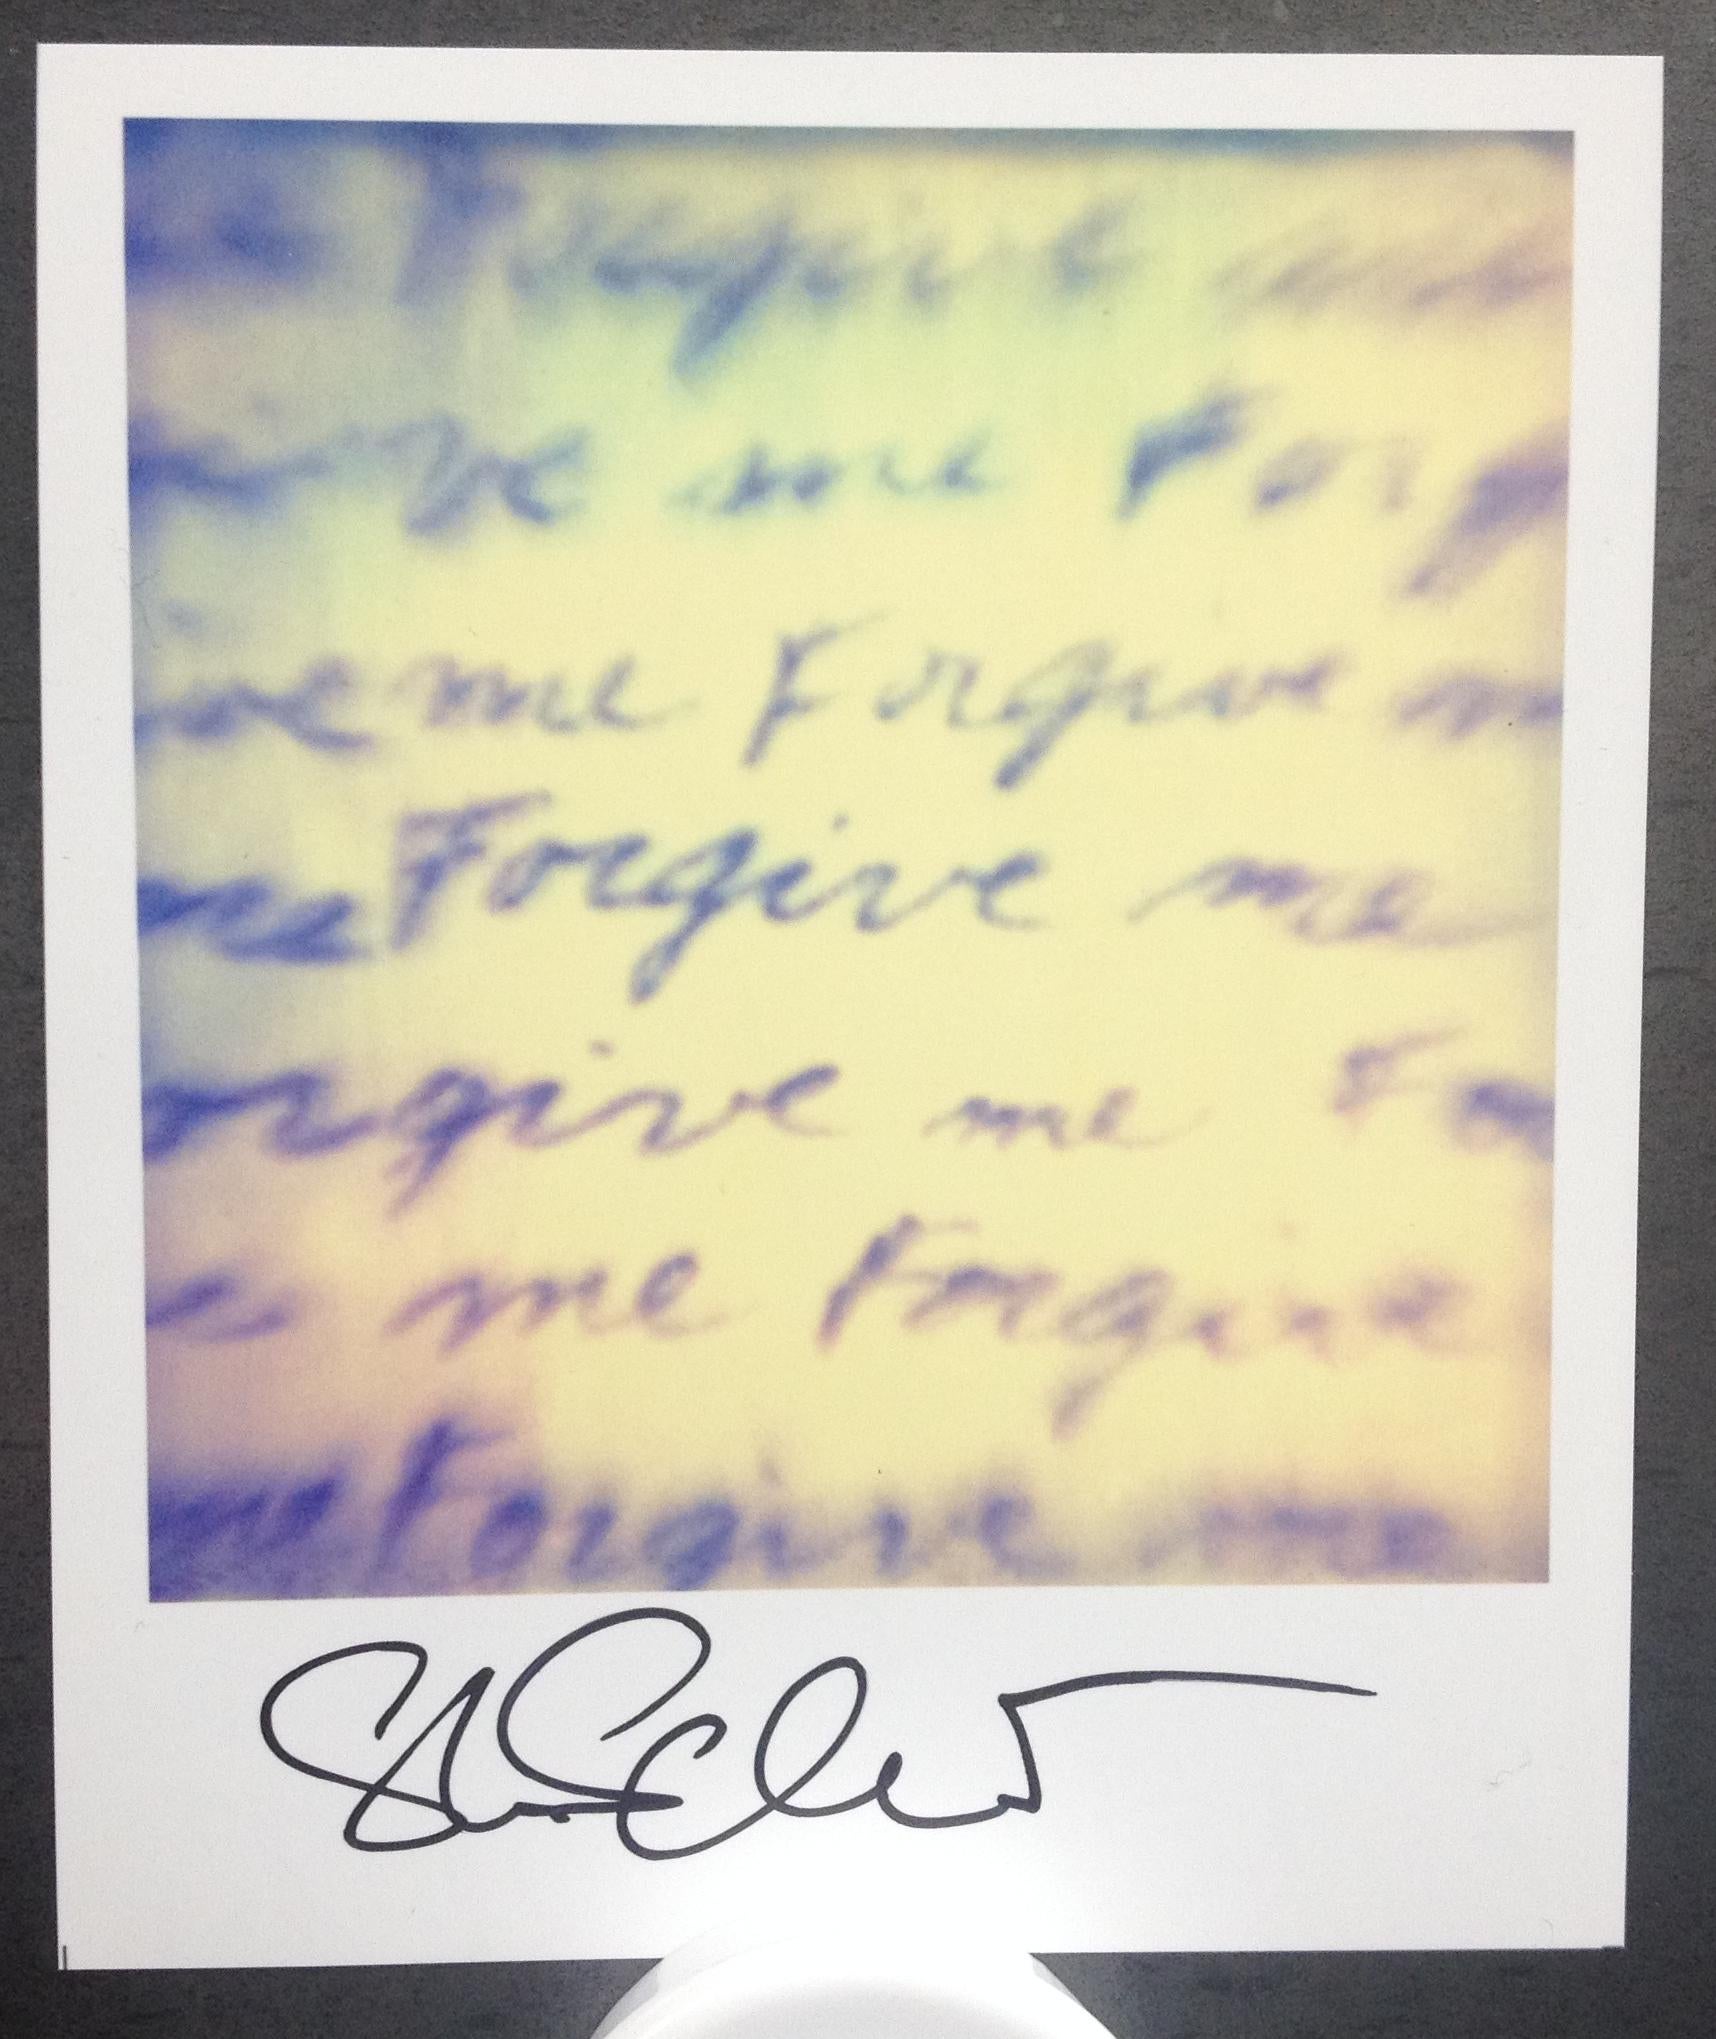 Stefanie Schneider Polaroidformat unbegrenzt Mini 'Forgive me' - 2006 - 

vorne signiert, nicht montiert. 
1 Digitale Farbfotografien auf der Grundlage eines Polaroids. 

Offene Editionen in Polaroidgröße 1999-2016
10.jeweils 7 x 8,8 cm (Bild 7,9 x